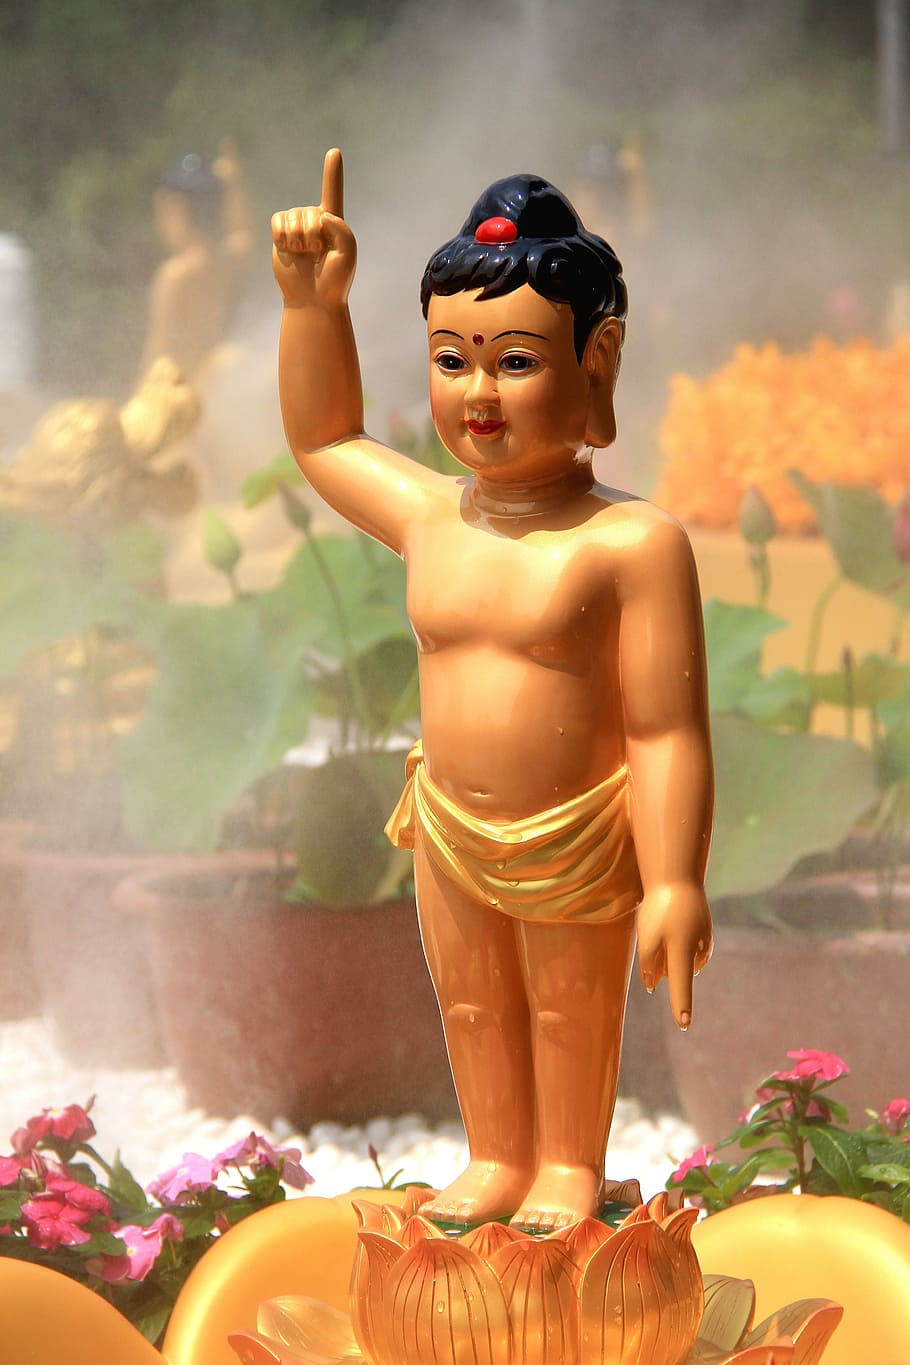 Siddhartha, Príncipe, Banho, Buda, Budismo, Príncipe Banho de Buda, festival de aniversário de Buda, spray de água, flor, estátua